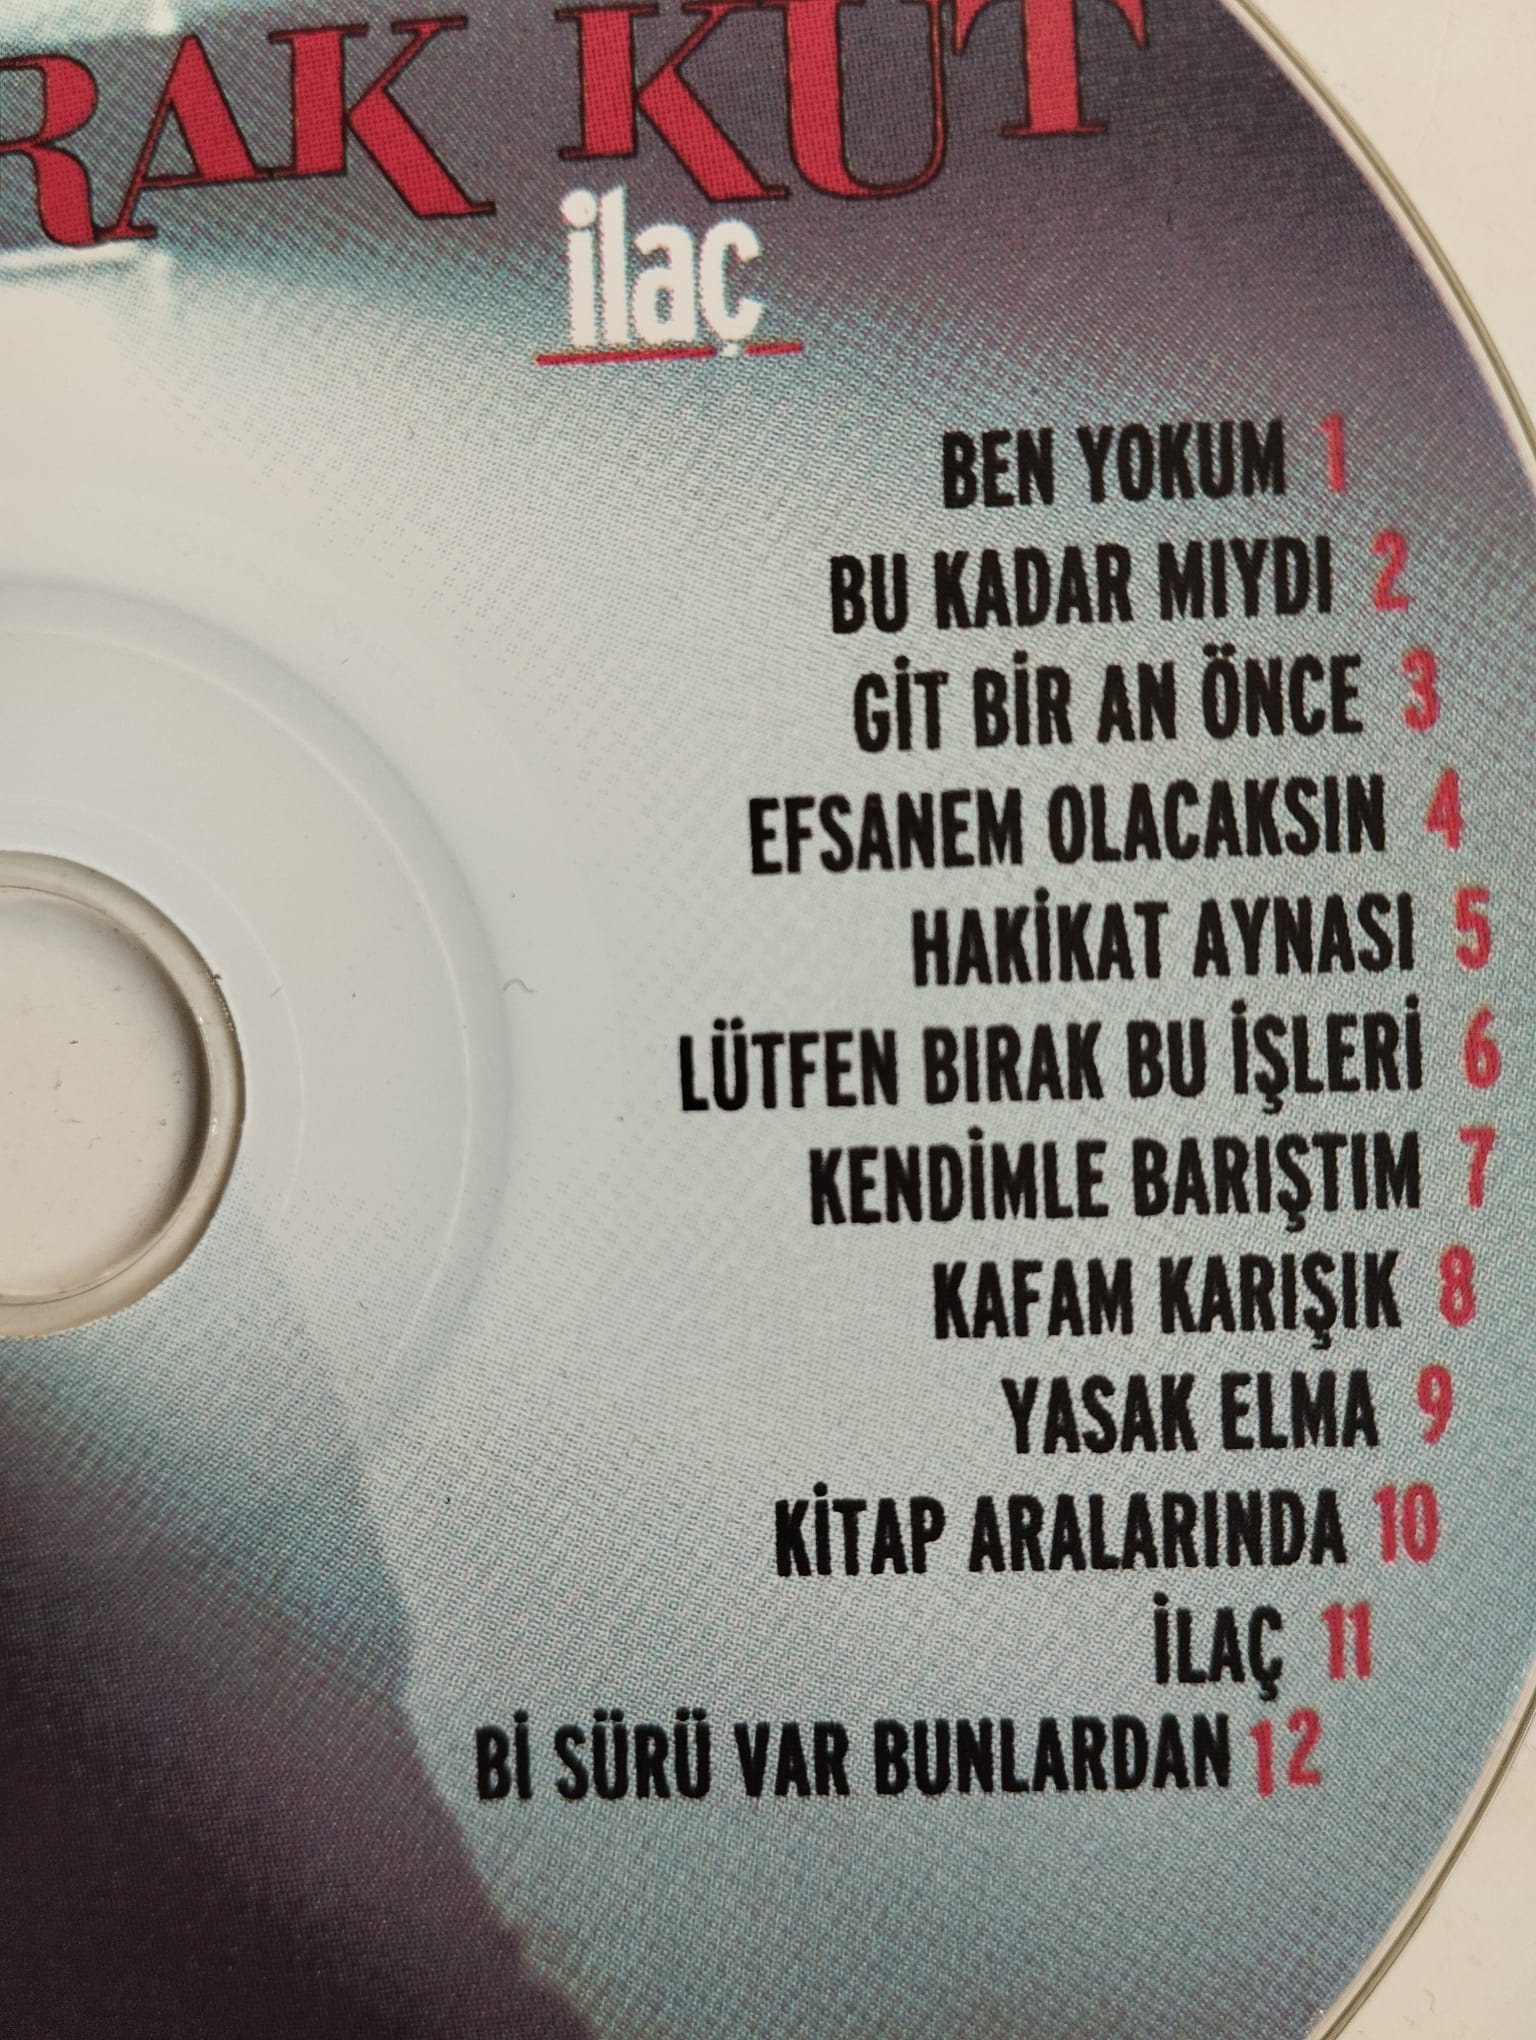 Burak Kut – İlaç - 2009 Türkiye Basım - 2. El CD Albüm